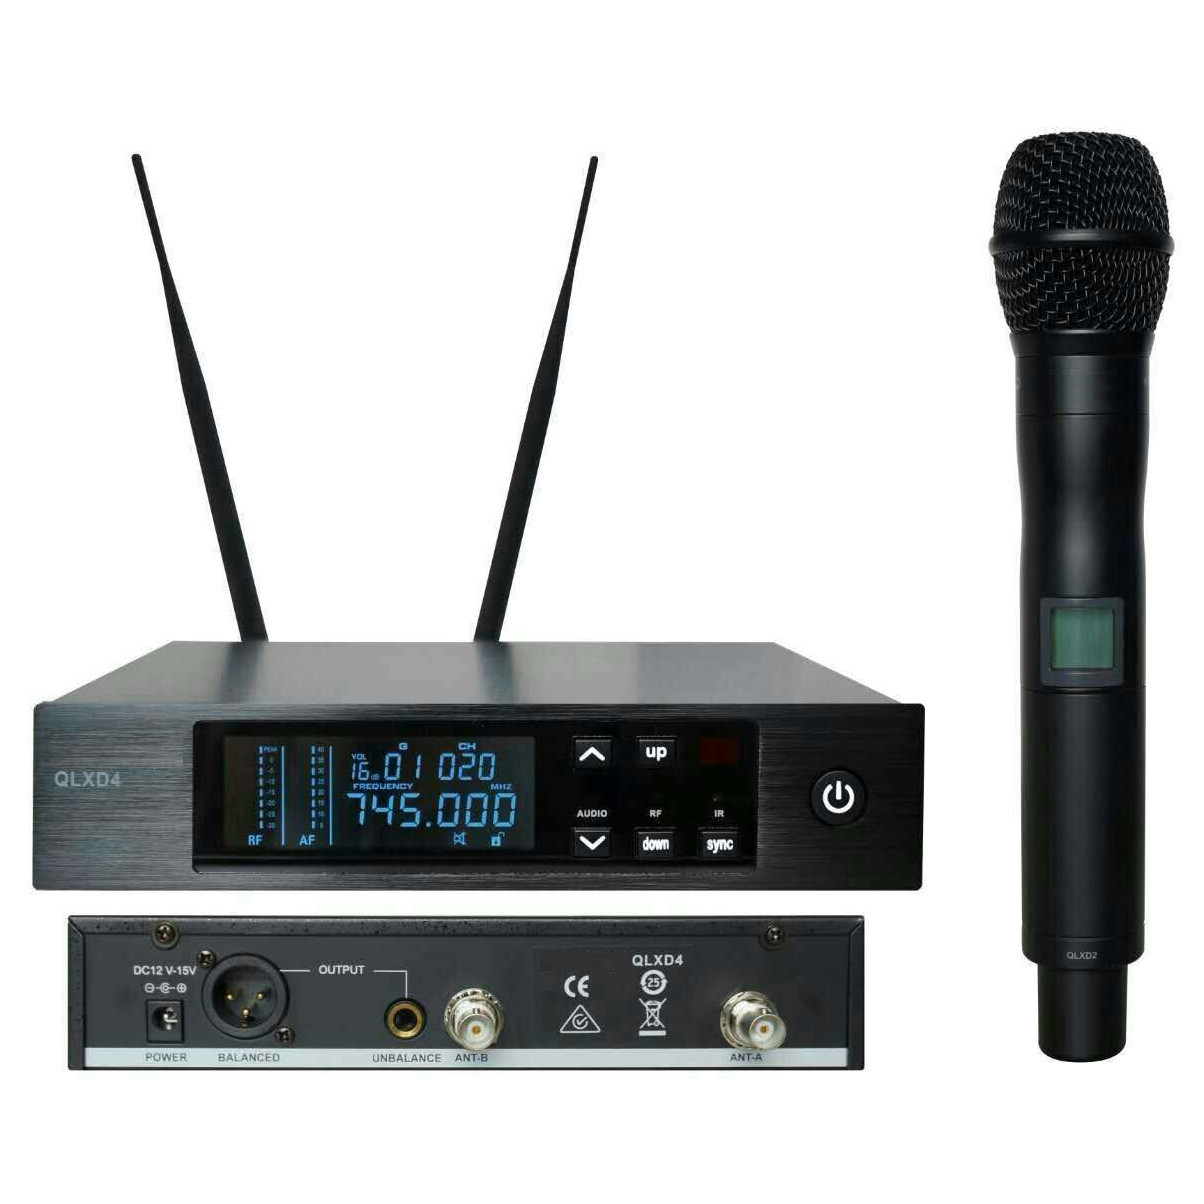 Utilizzo del microfono wireless QLXD4 sul palco